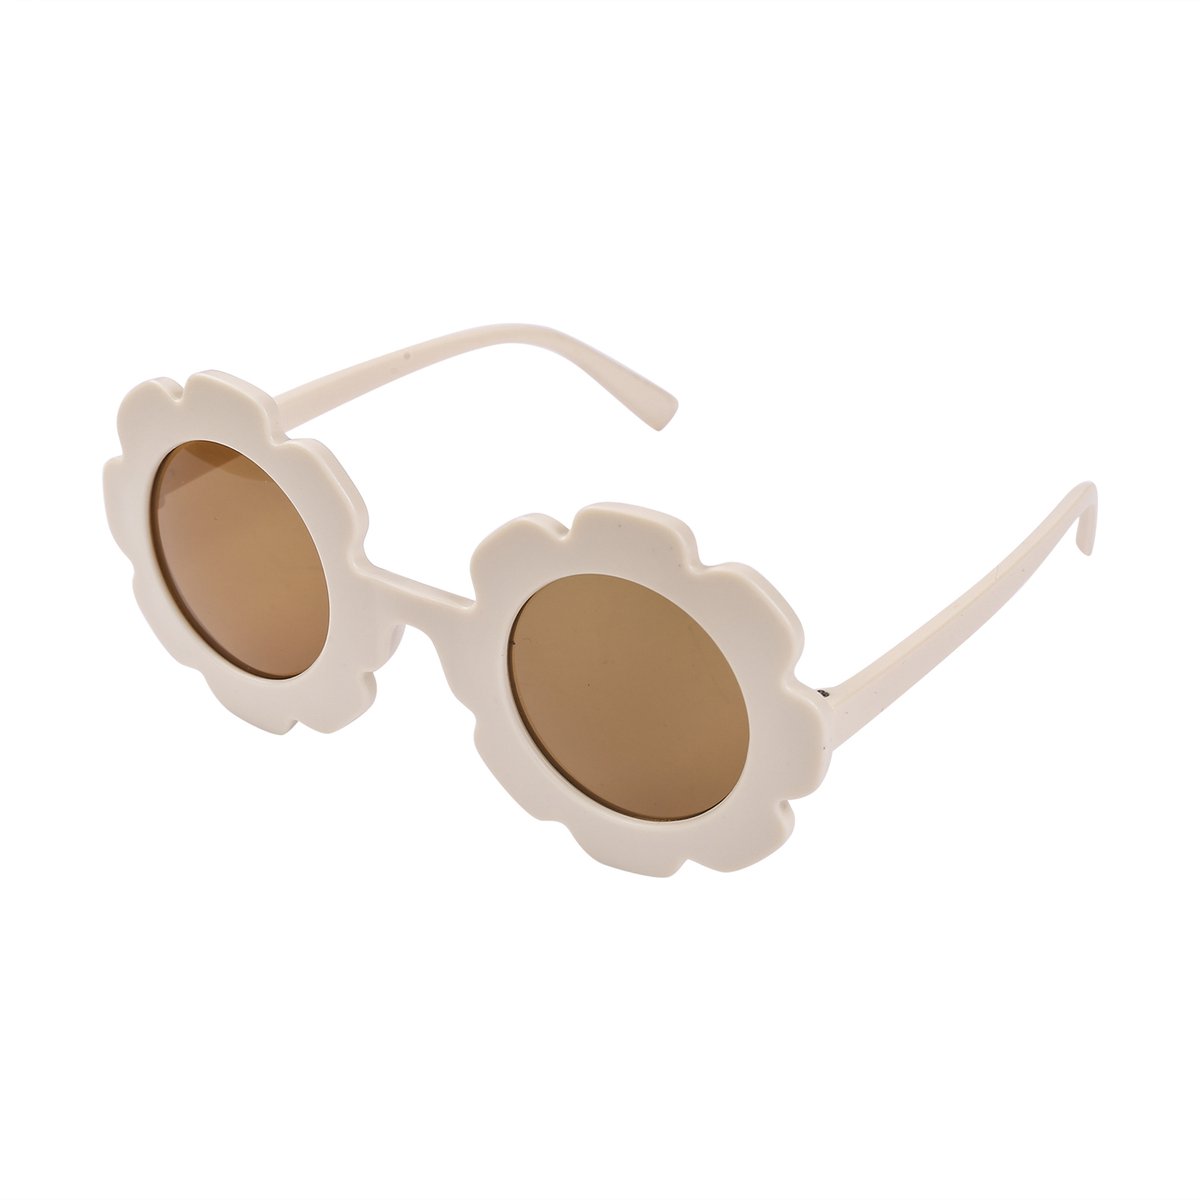 Maesy - kinderzonnebril Sunny - bloem zonnebril voor kinderen - peuters - jongens en meisjes - UV400 bescherming - hippe retro bril rond - wit ecru